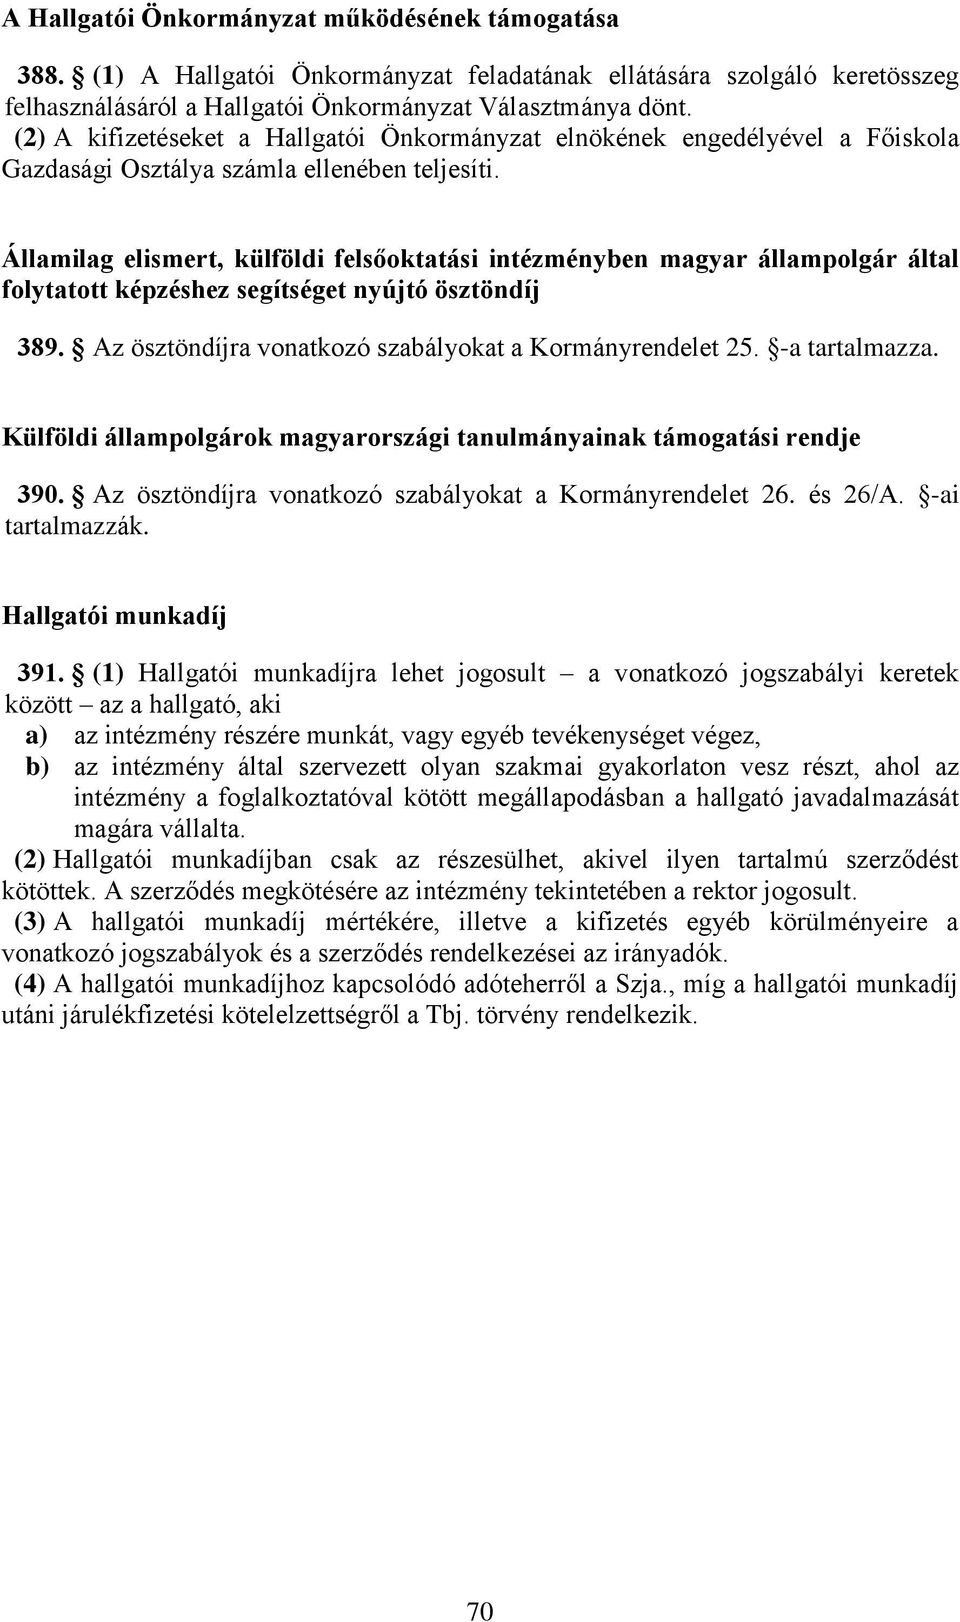 Államilag elismert, külföldi felsőoktatási intézményben magyar állampolgár által folytatott képzéshez segítséget nyújtó ösztöndíj 389. Az ösztöndíjra vonatkozó szabályokat a Kormányrendelet 25.